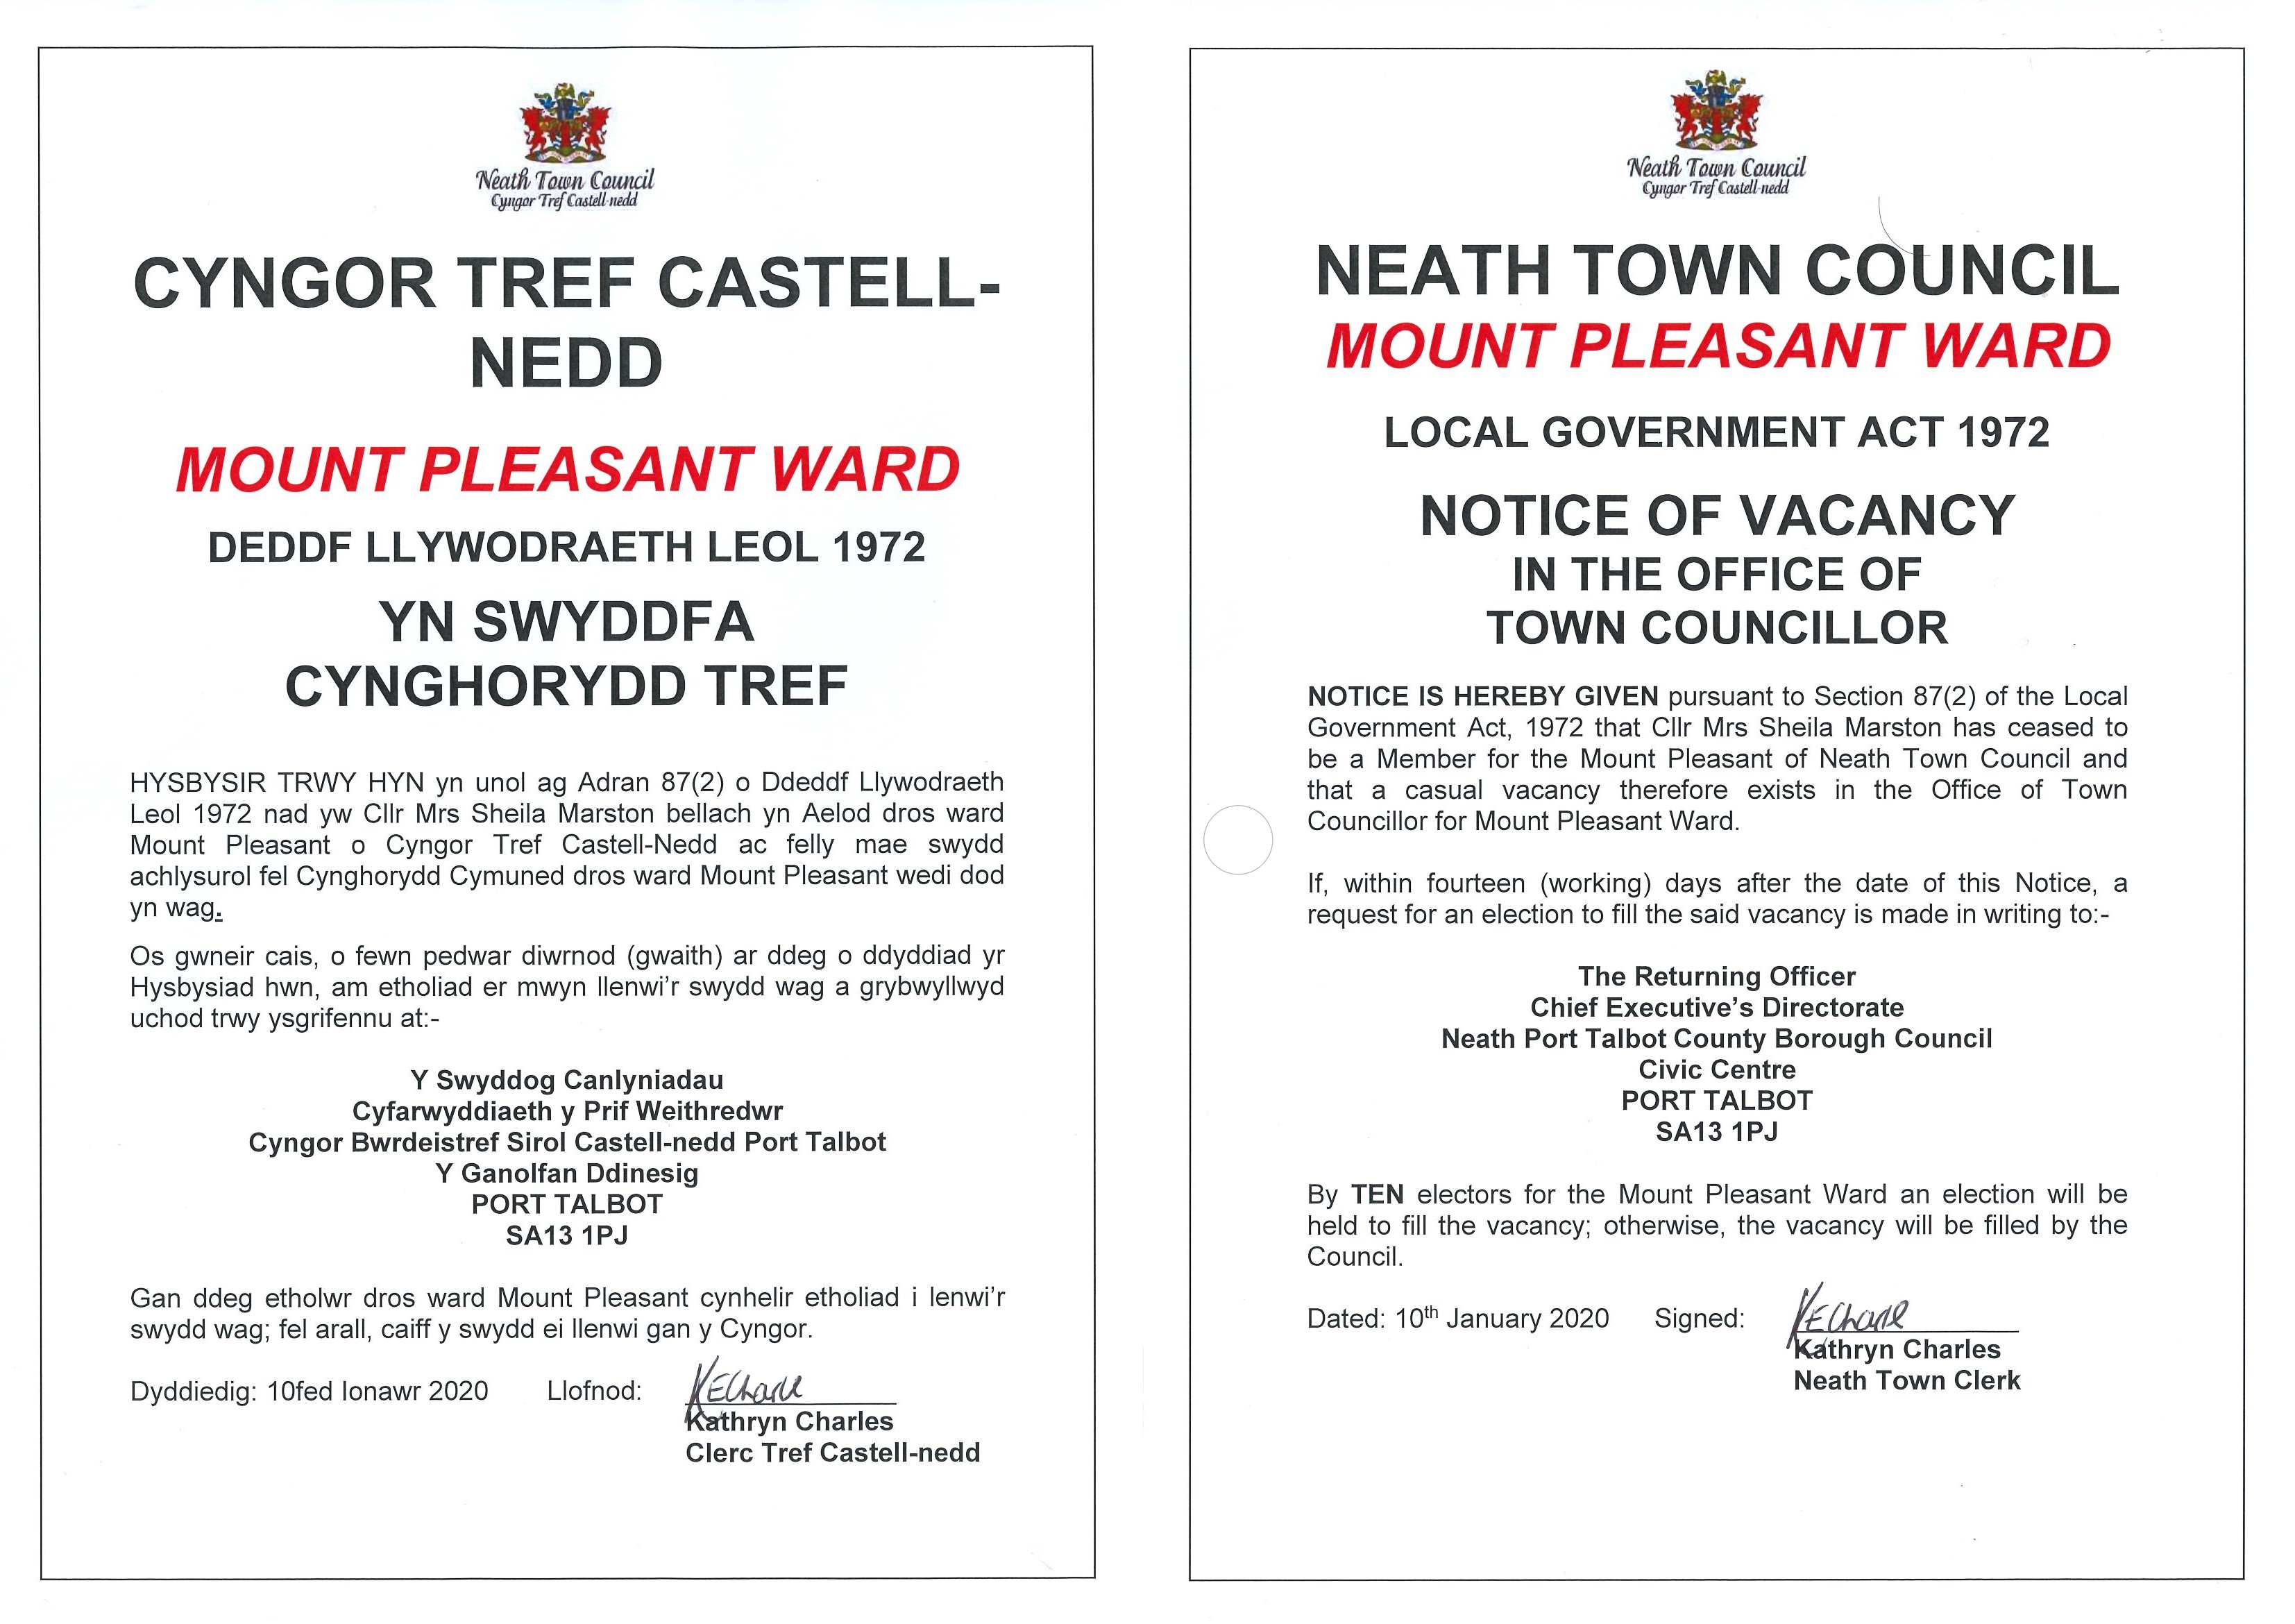 Notice of Vacancy in Mount Pleasant Ward